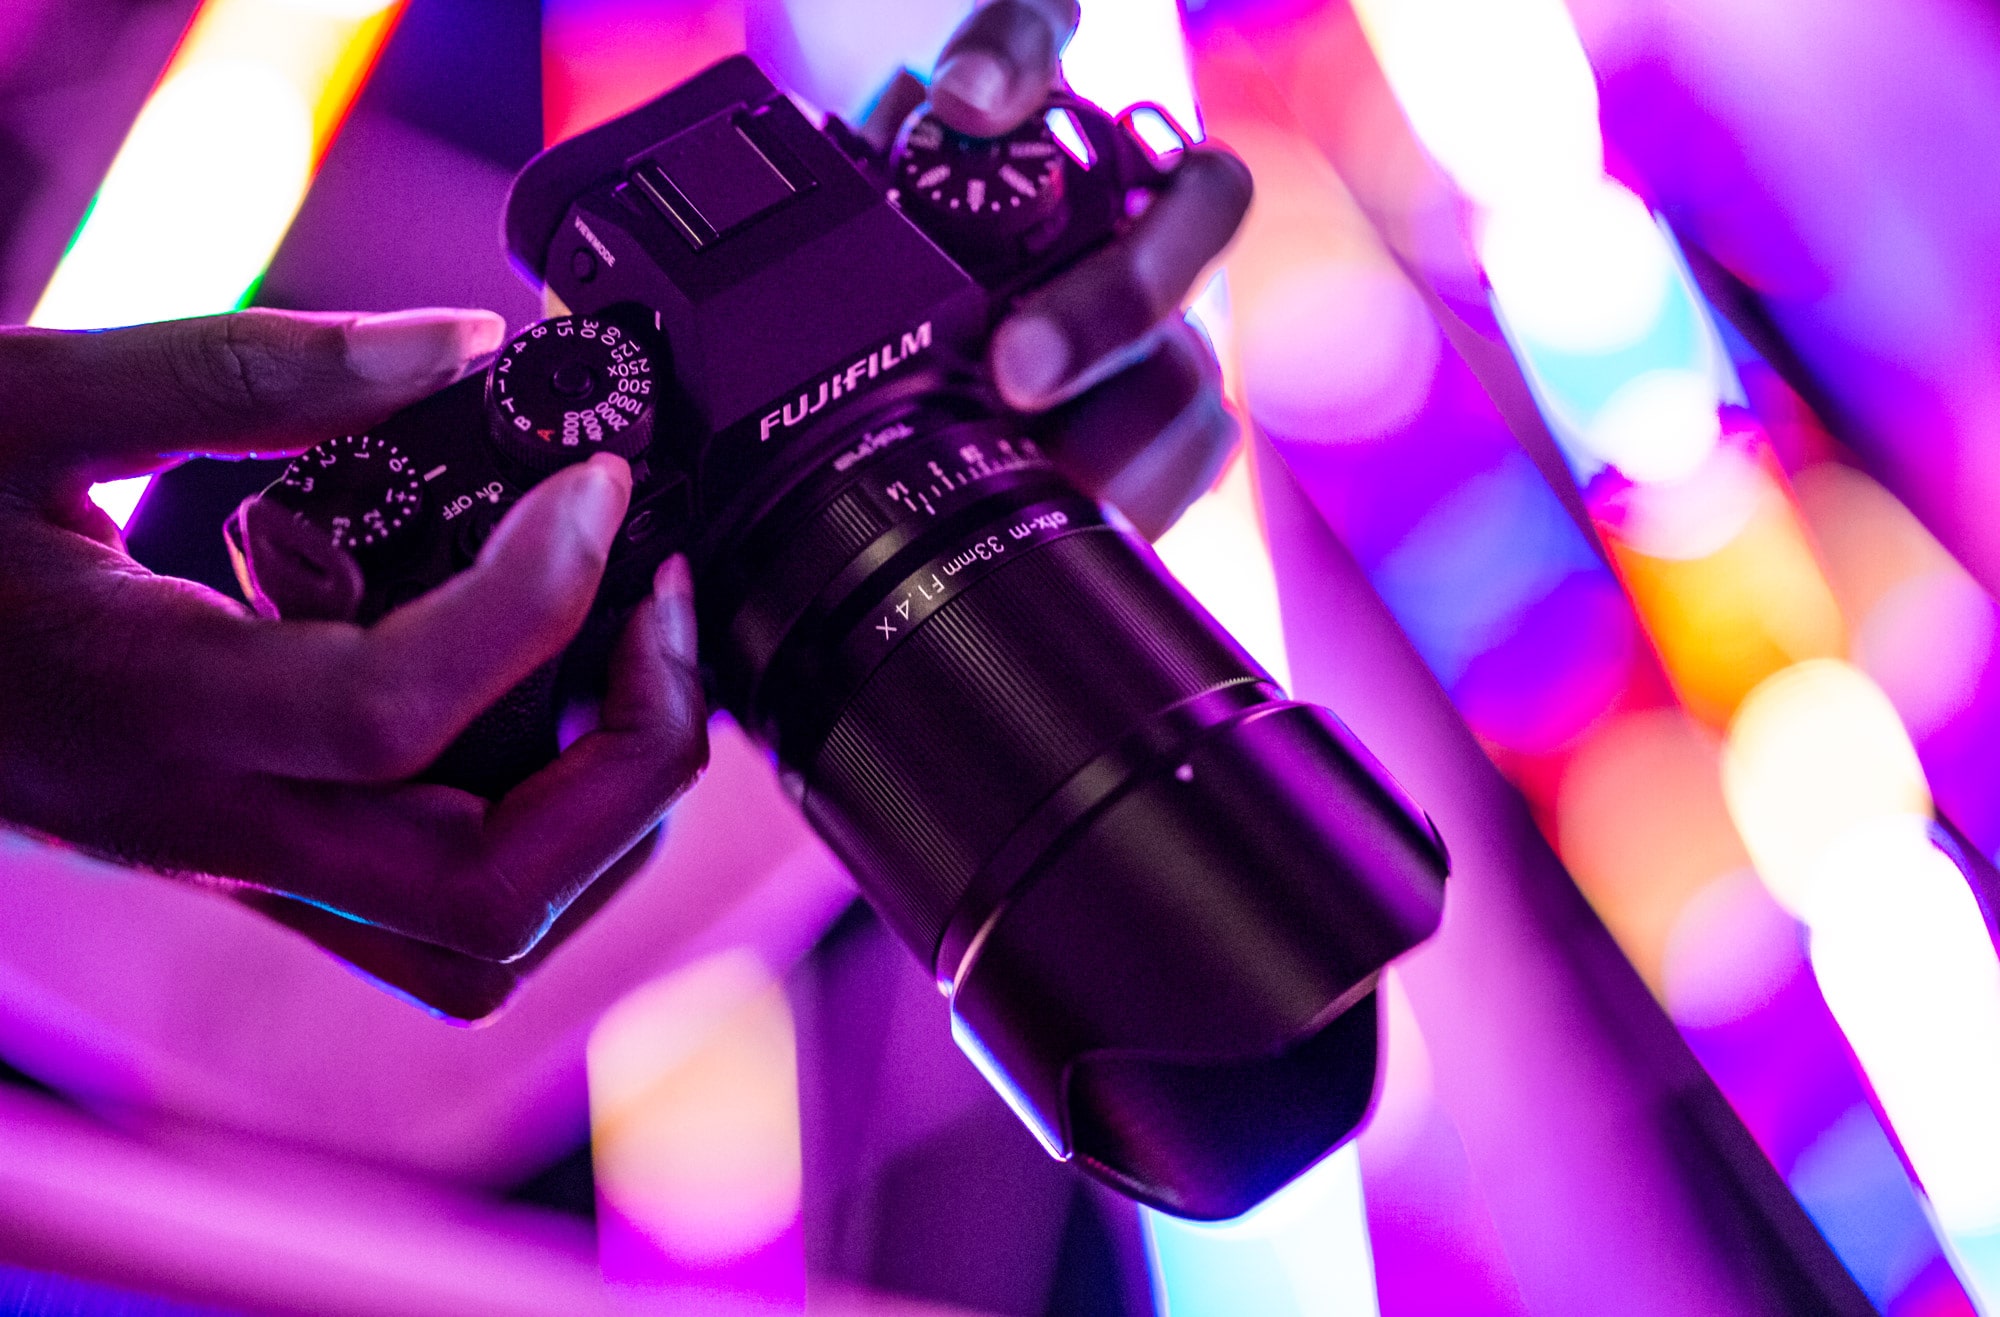 Tokina ra mắt ống kính ATX-M 23mm F1.4 và ATX-M 33mm F1.4 dành cho ngàm X của Fujifilm